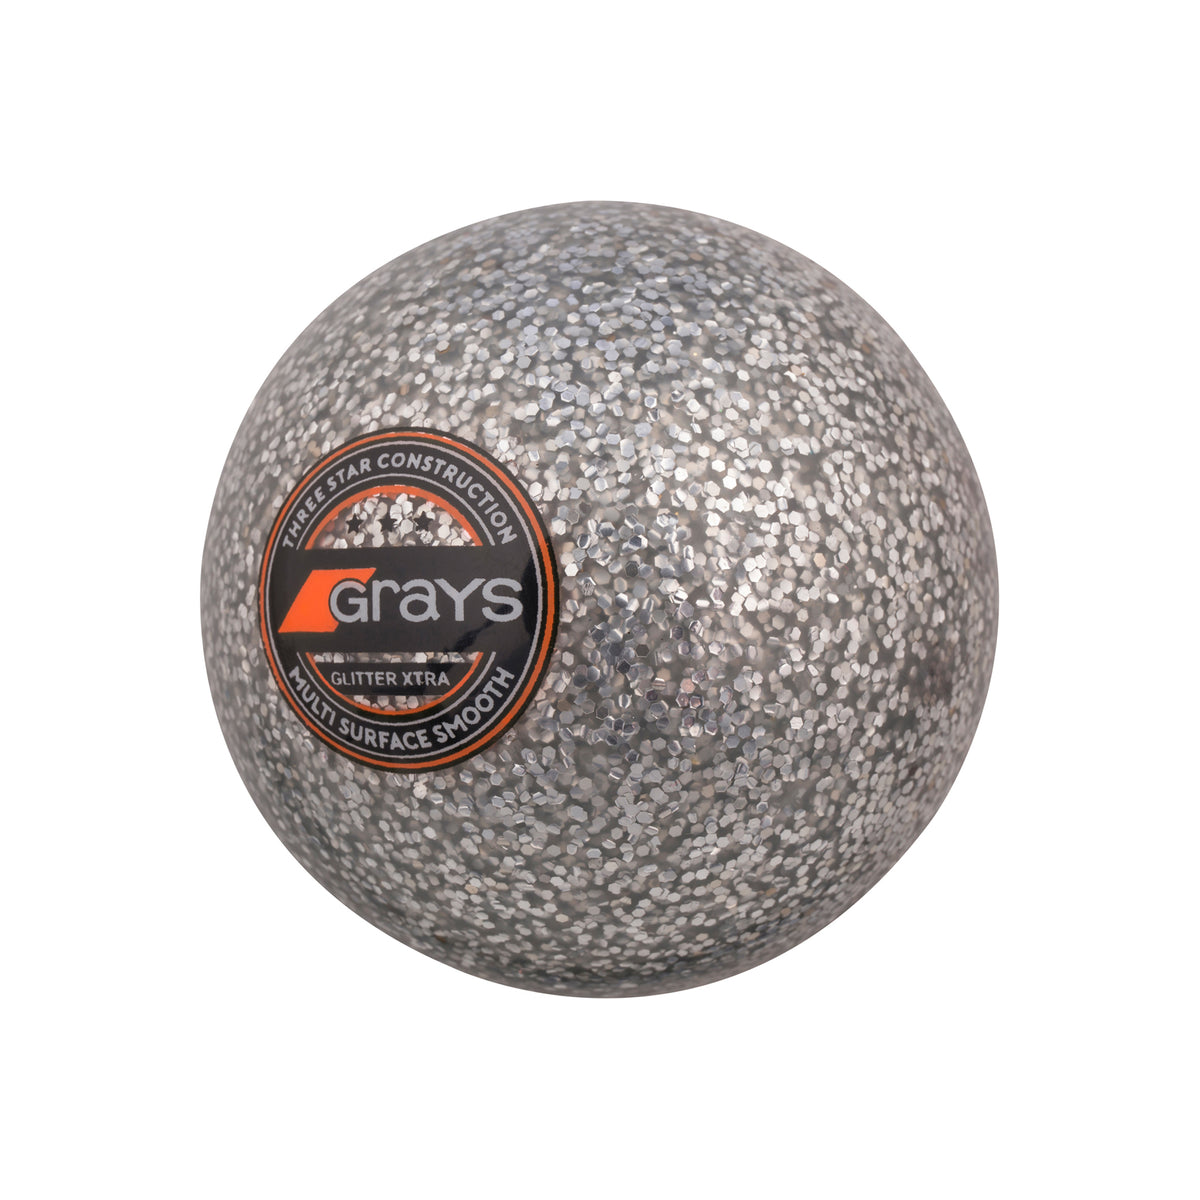 Grays Glitter Xtra Hockey Ball: Silver